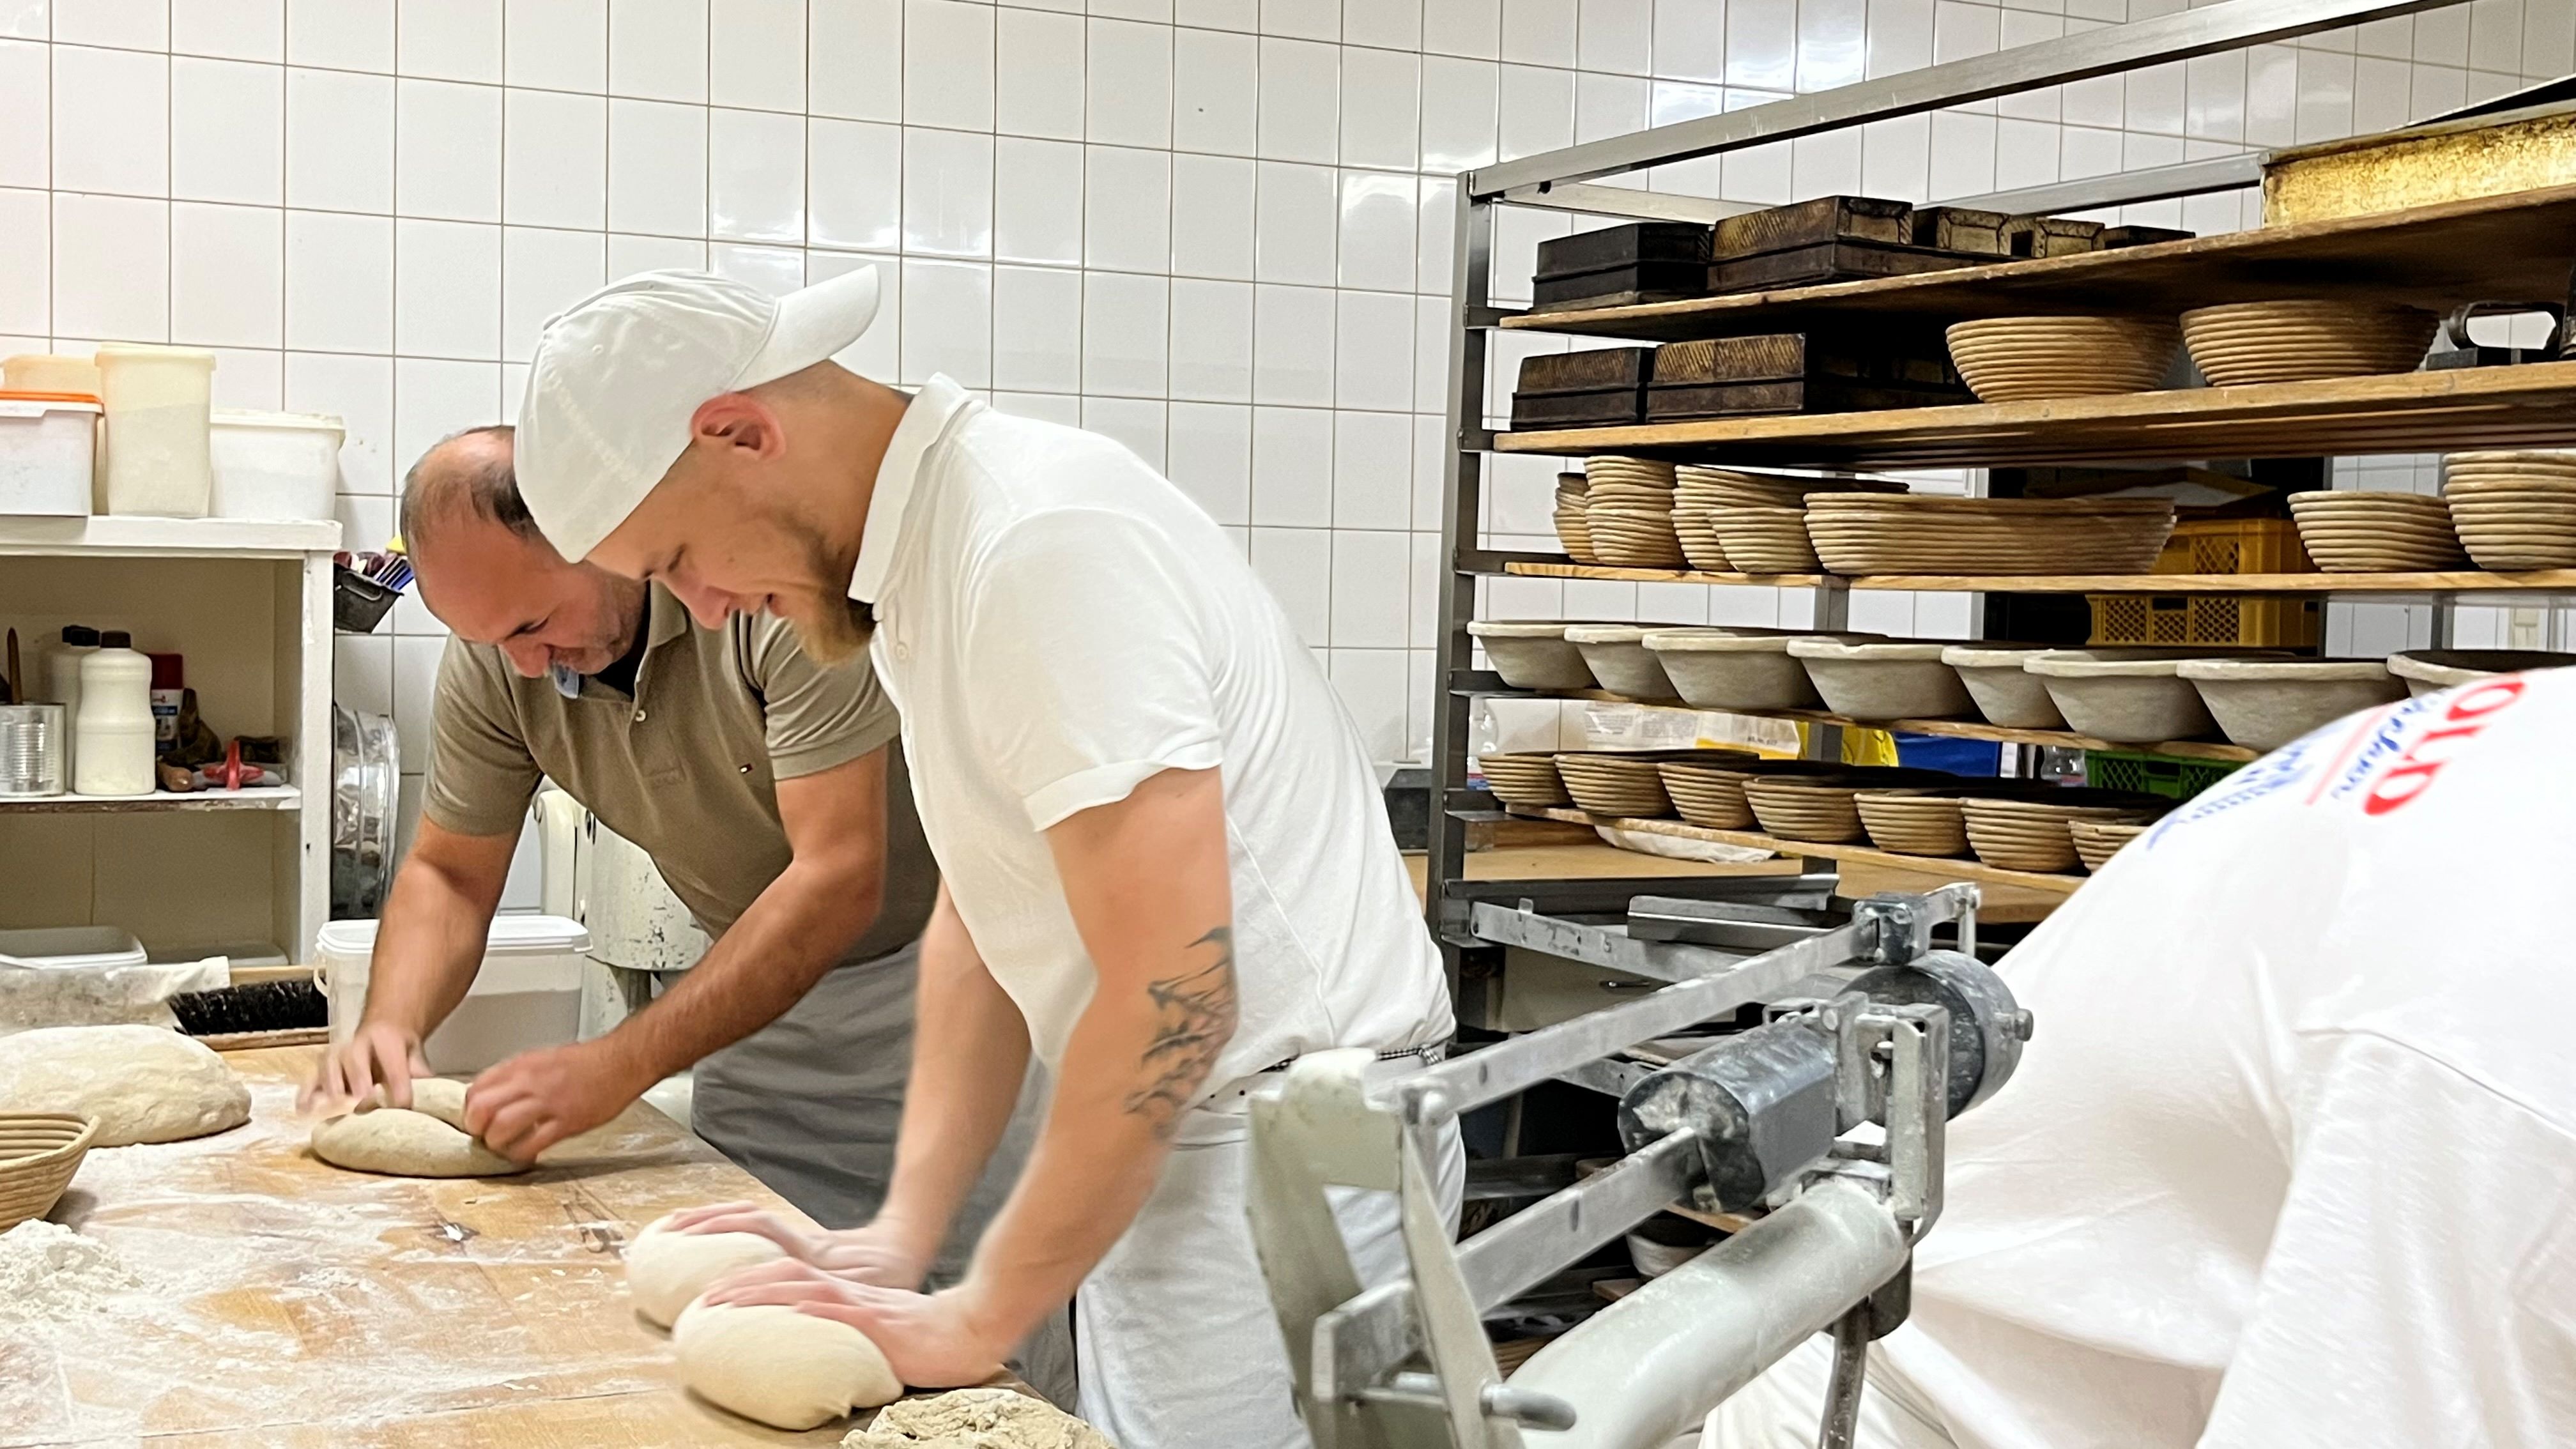 09.72.2022 - Eintauchen in die Welt des Bäckerhandwerks - Der Teig für das Roggenmischbrot wird in Form gebracht.